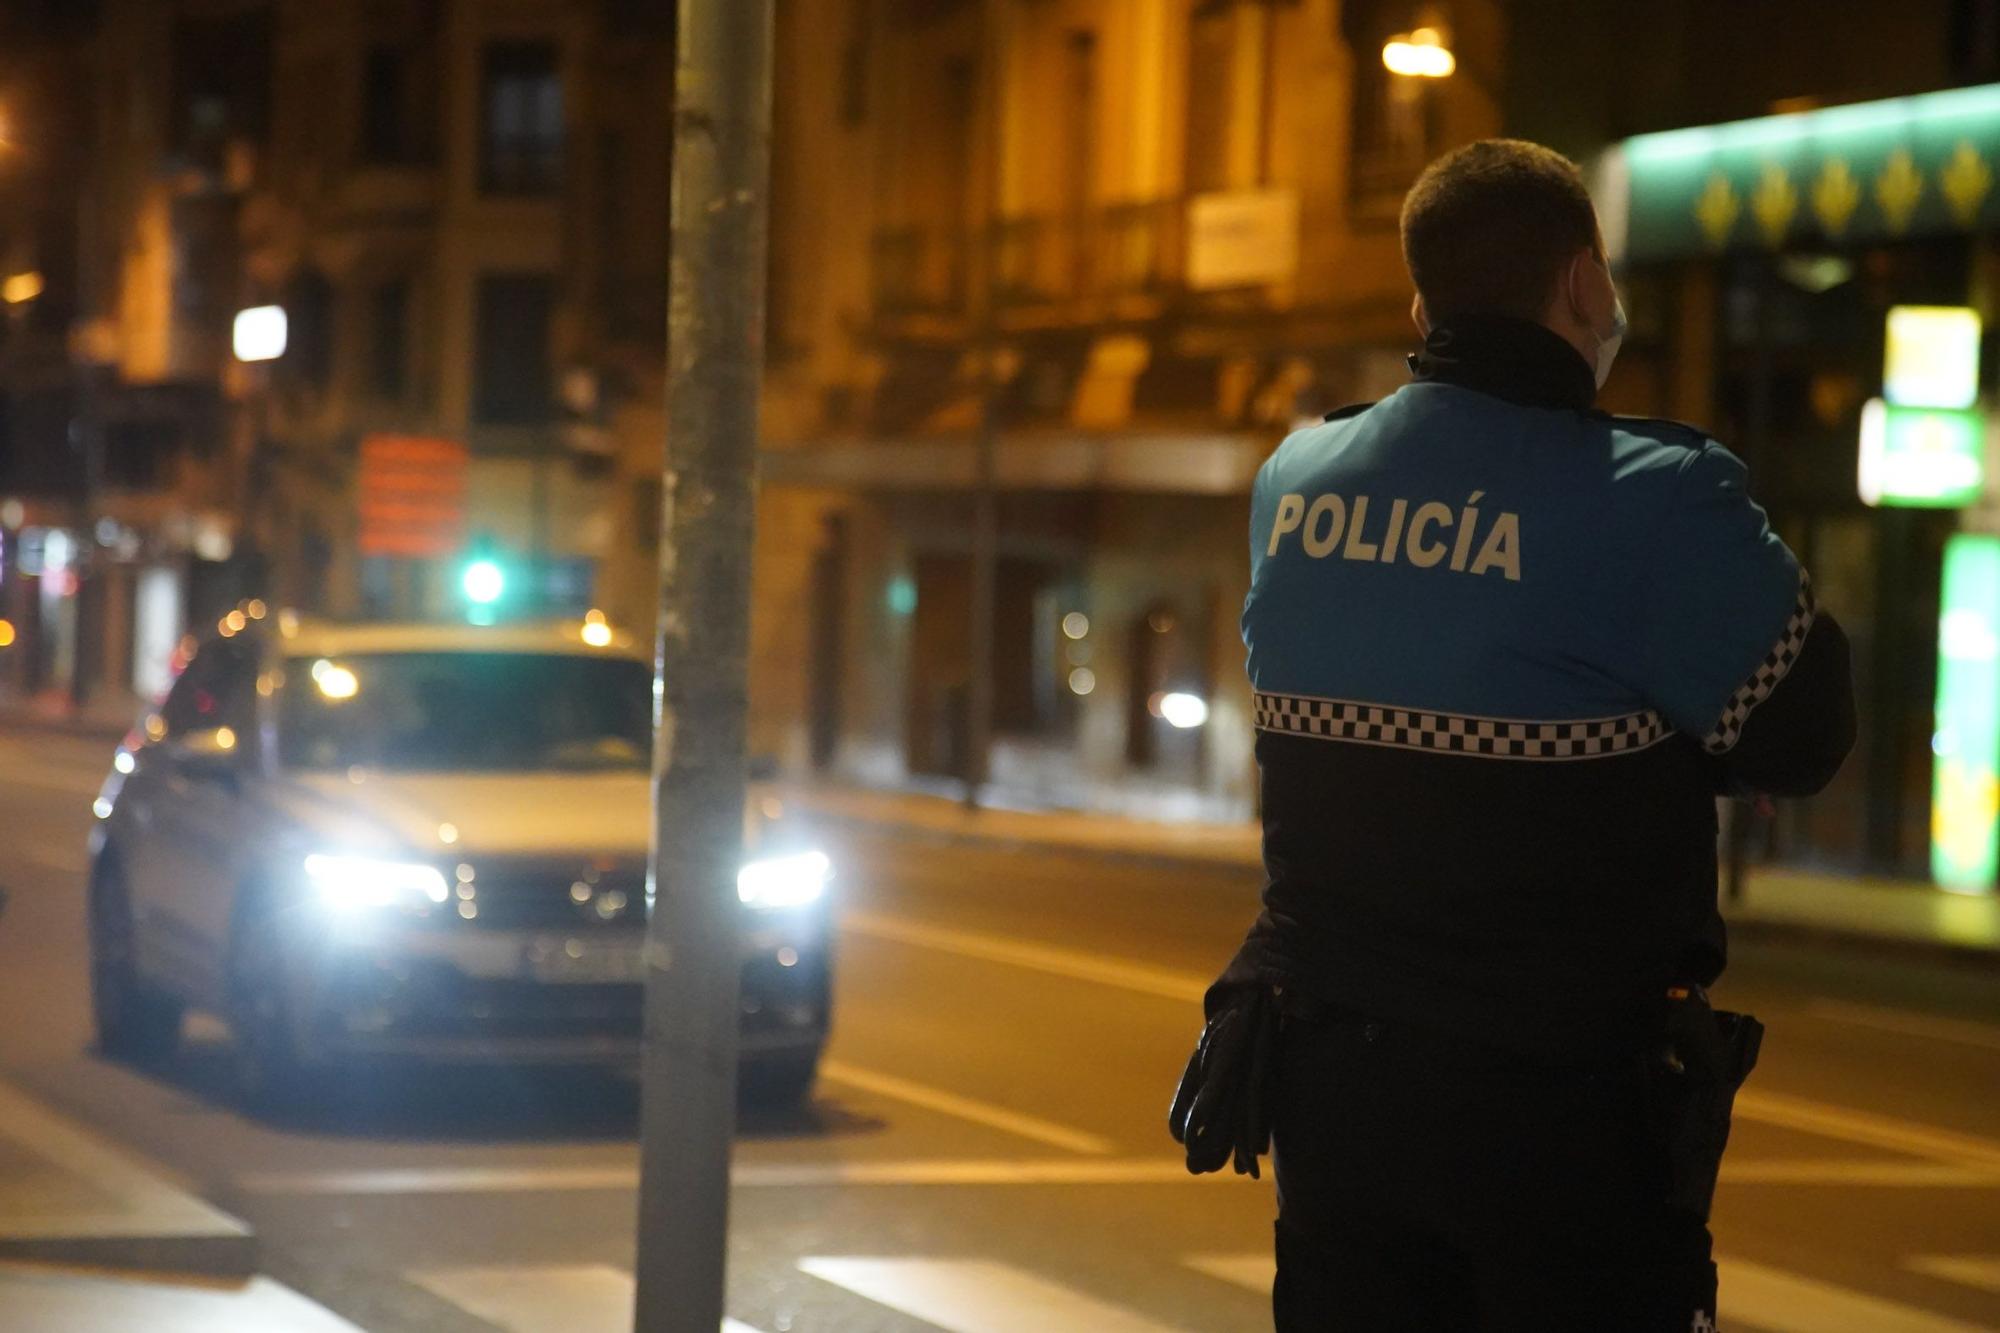 Así vigilan los Fuerzas y Cuerpos de Seguridad el primer toque de queda en Zamora